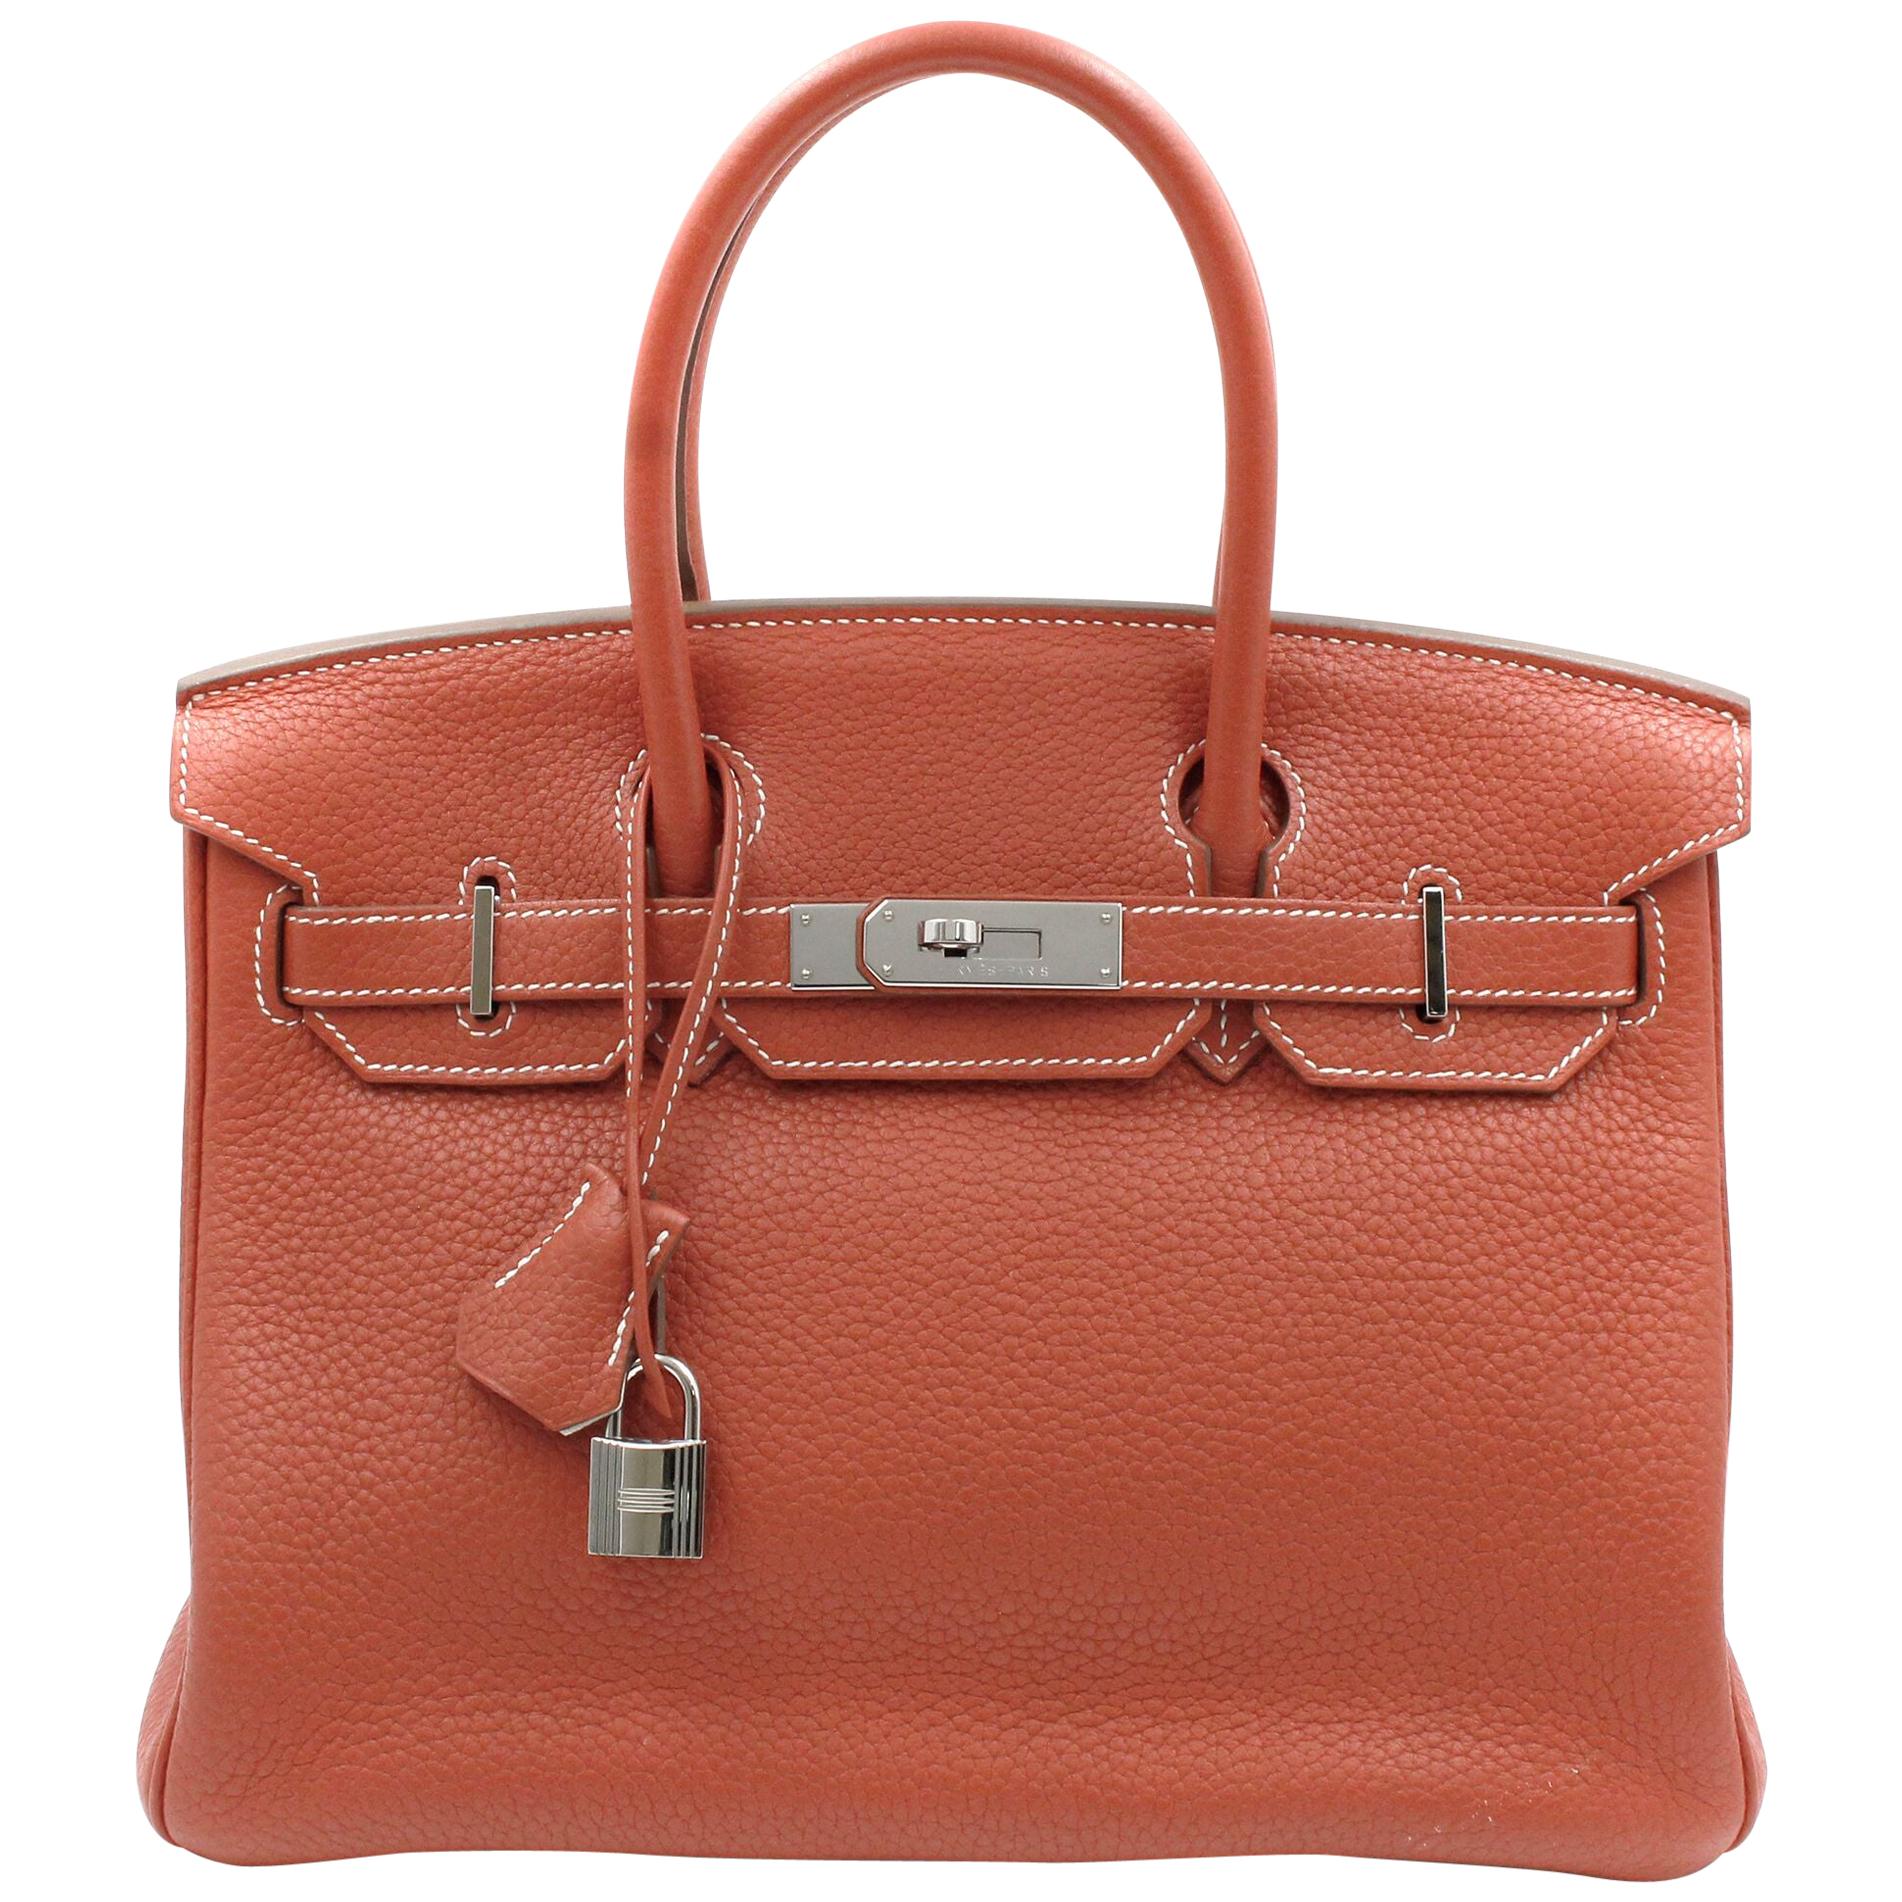 Hermès Birkin Limited Edition 30 Sanguine Orange/White Leather Satchel Bag